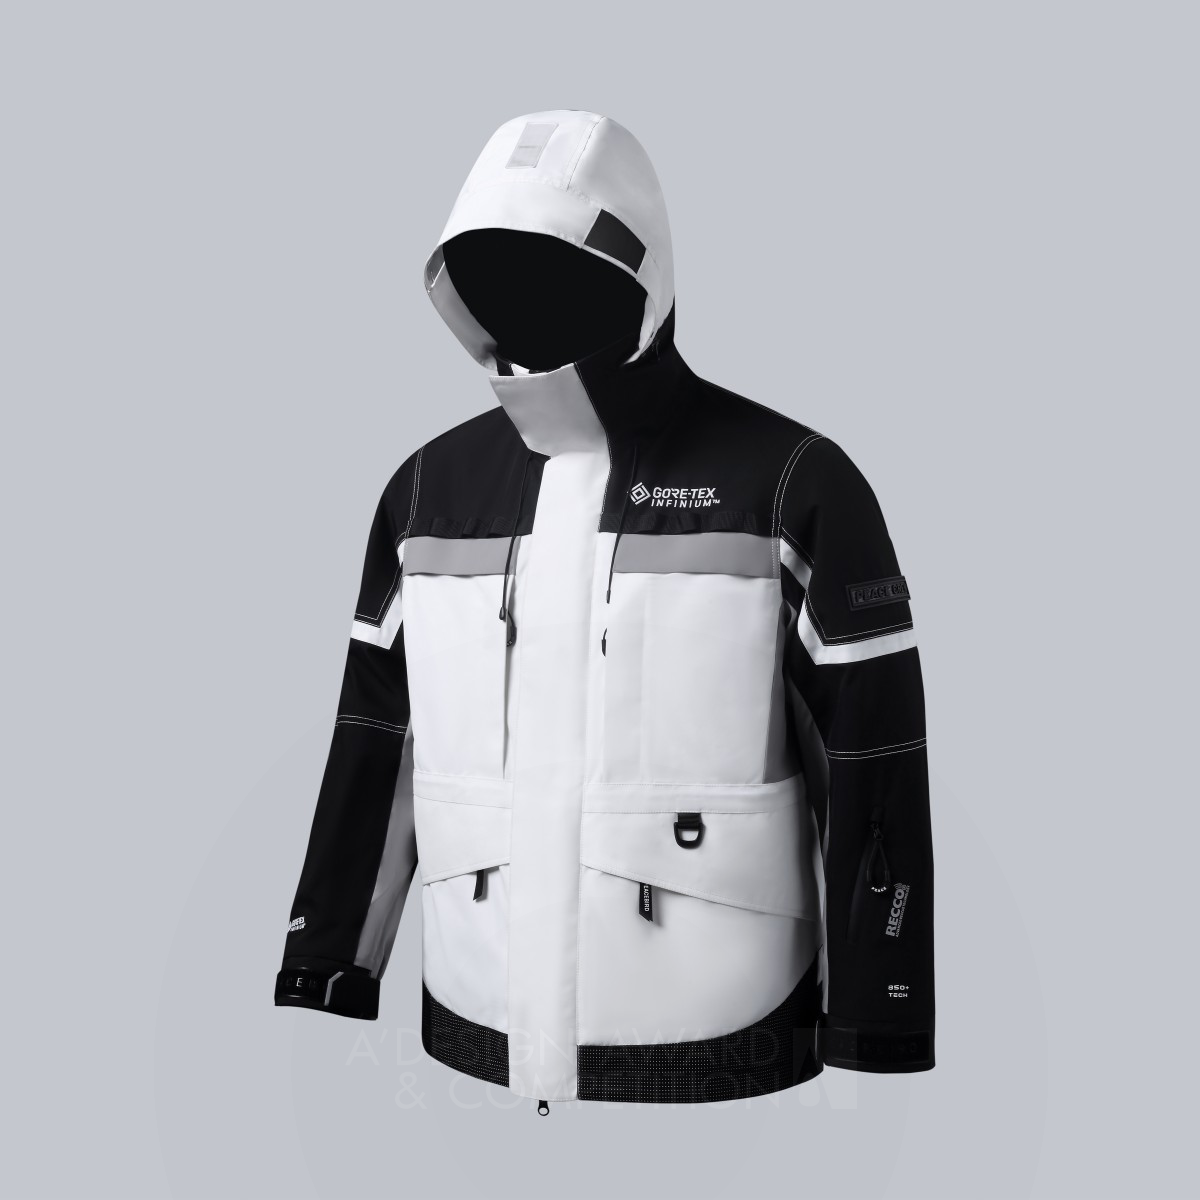 Модульная пуховая куртка Peacebird: инновация в области технической одежды для экстремальных условий